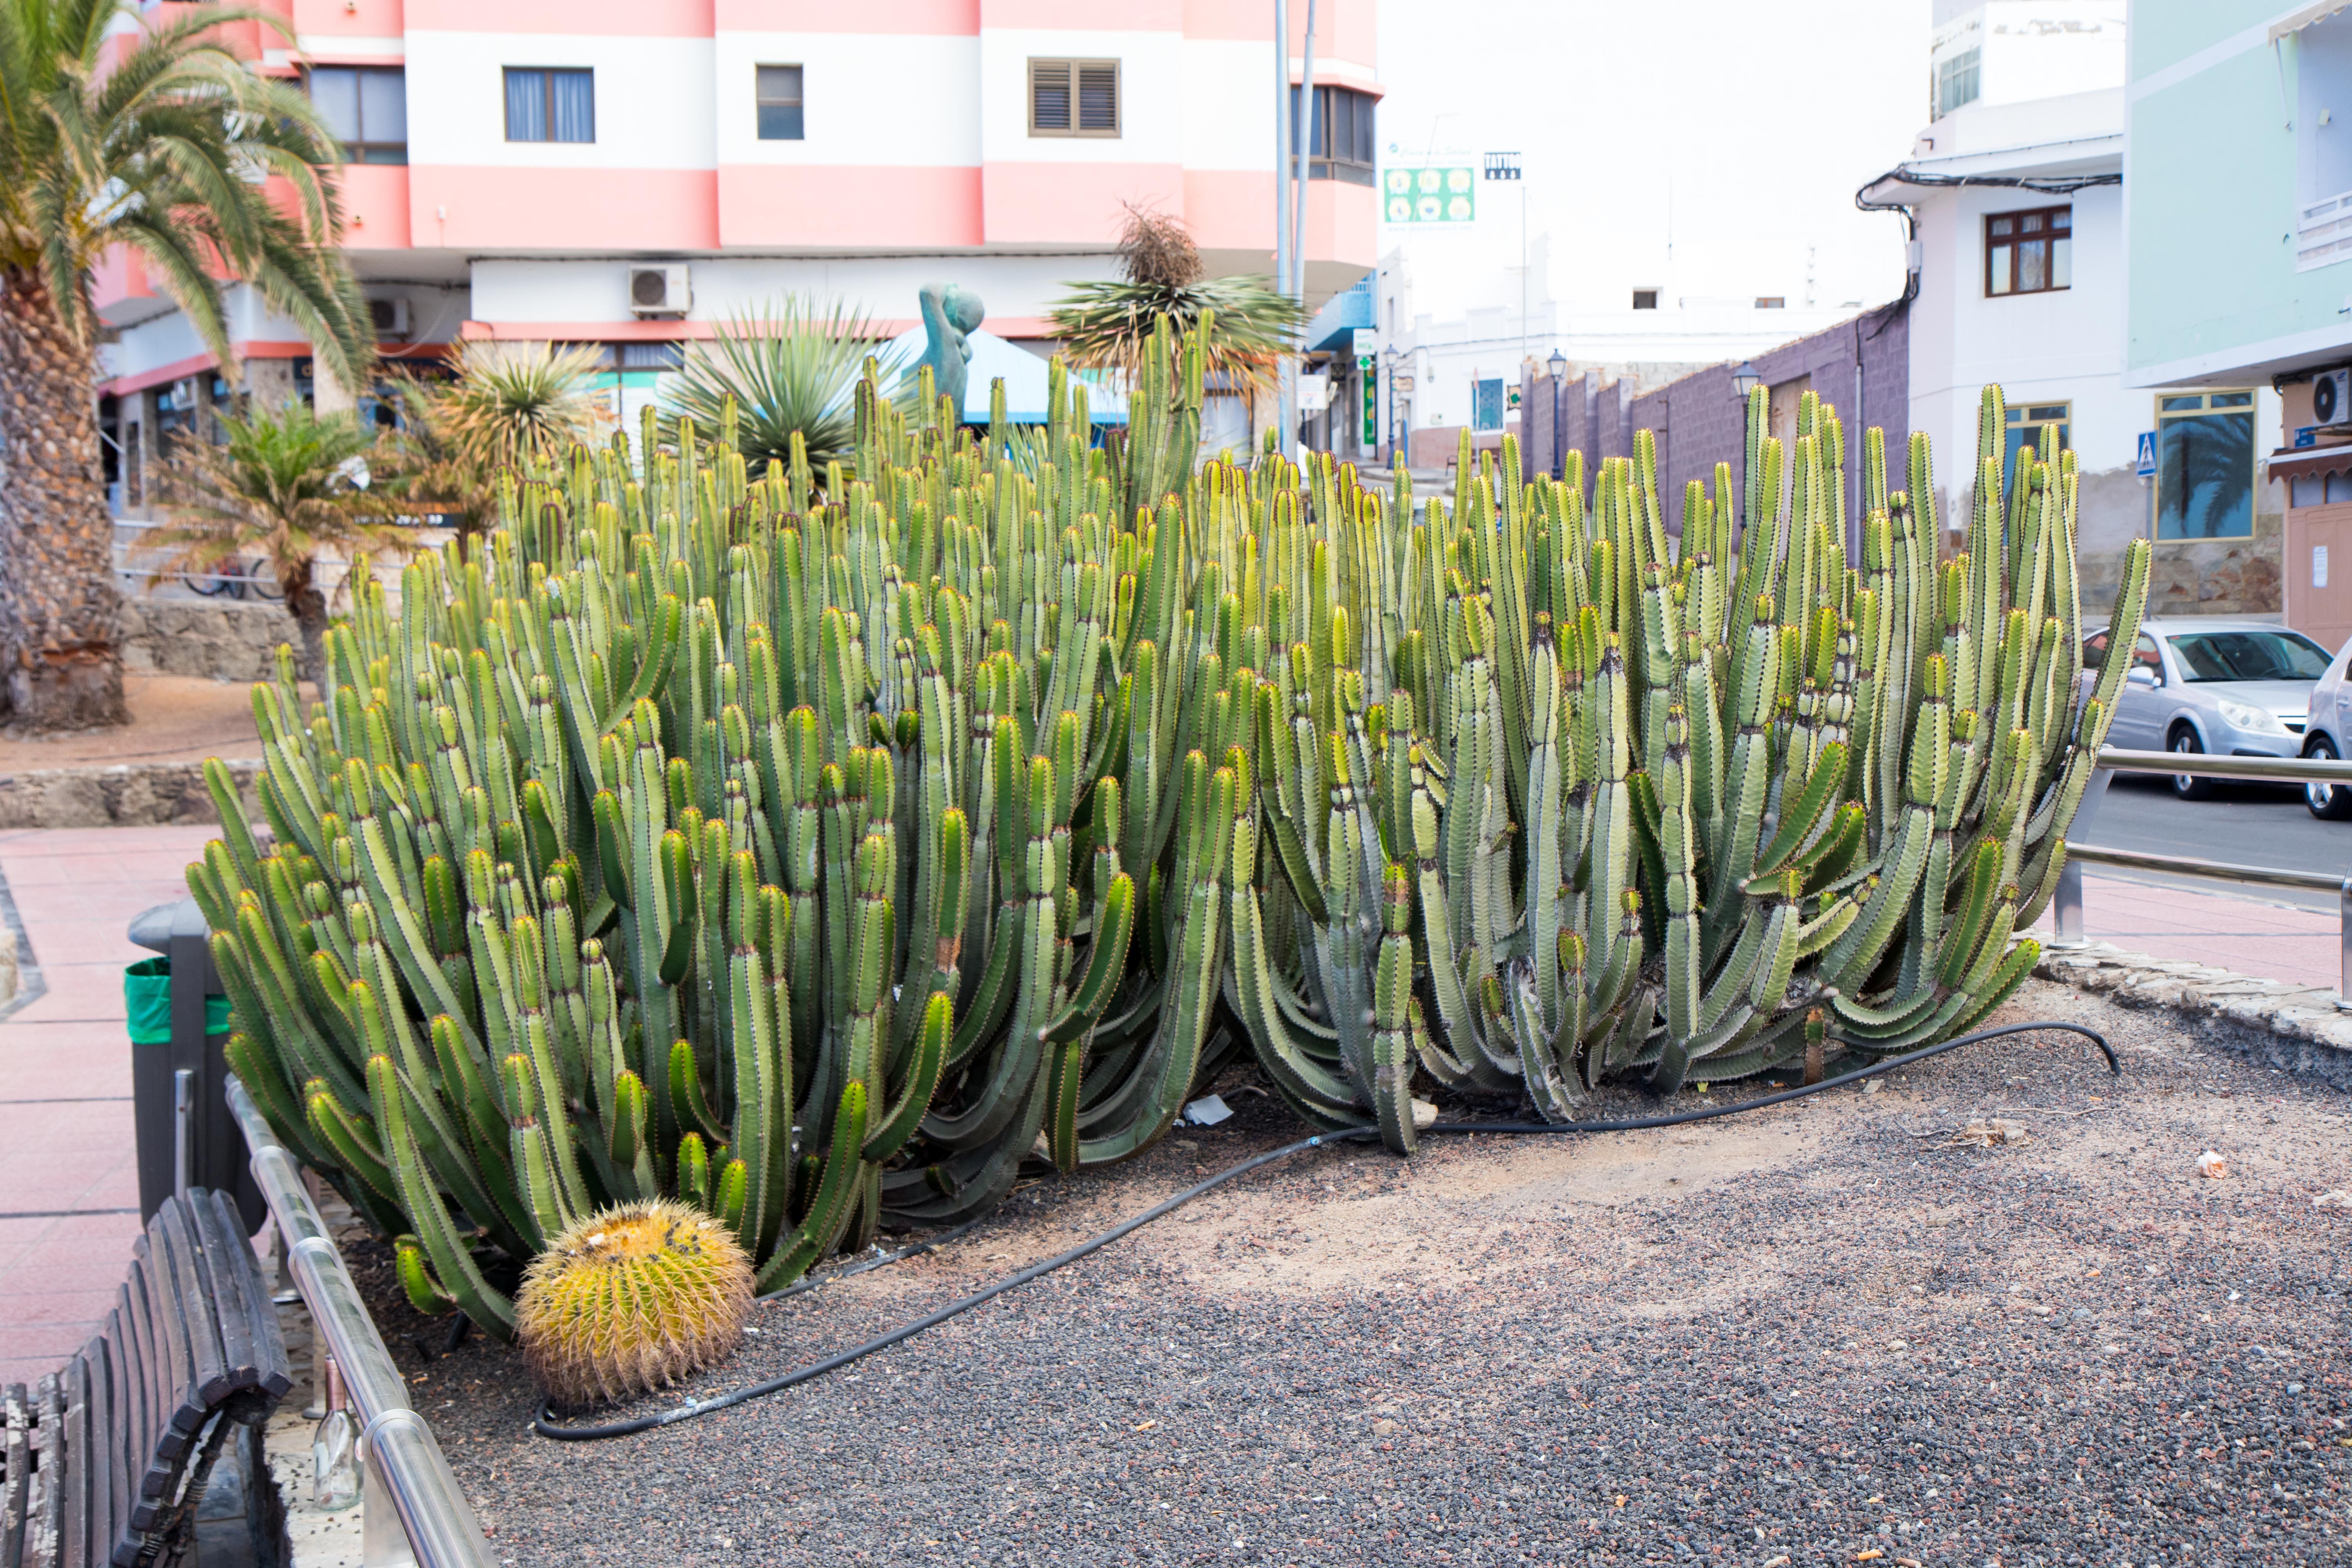 Cactus is growing everywhere.